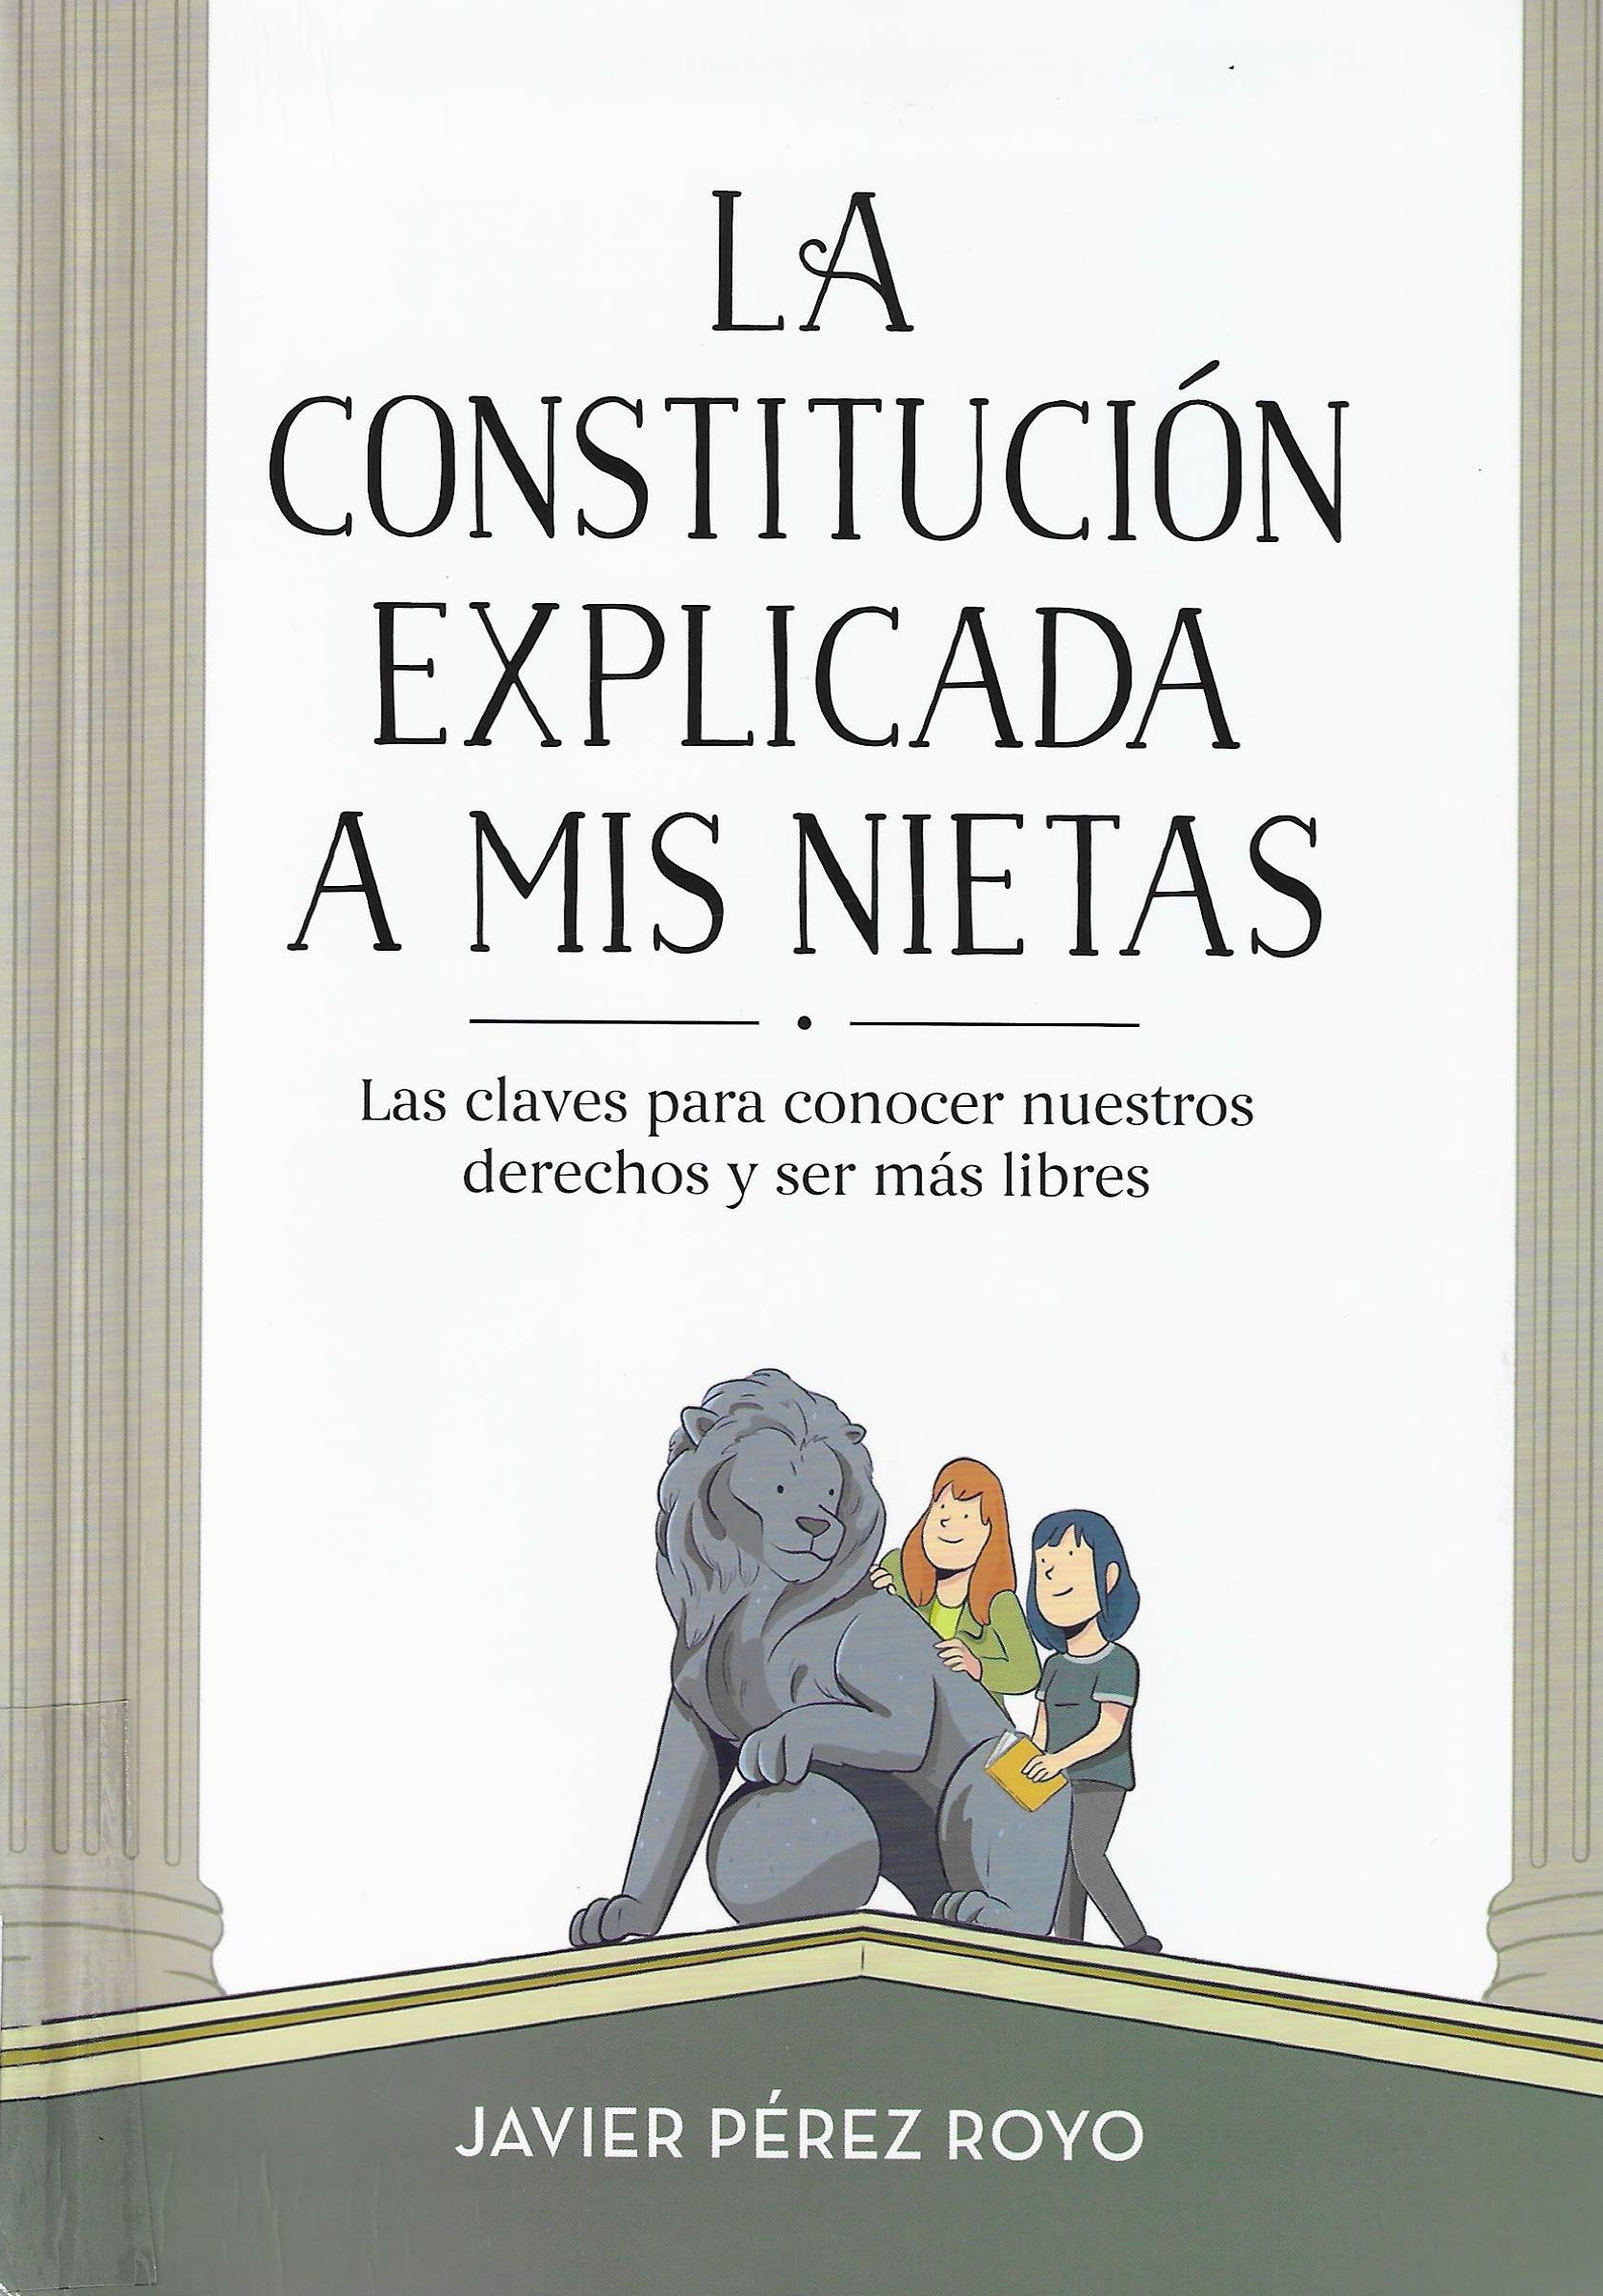 Imagen de portada del libro La constitución explicada a mis nietas